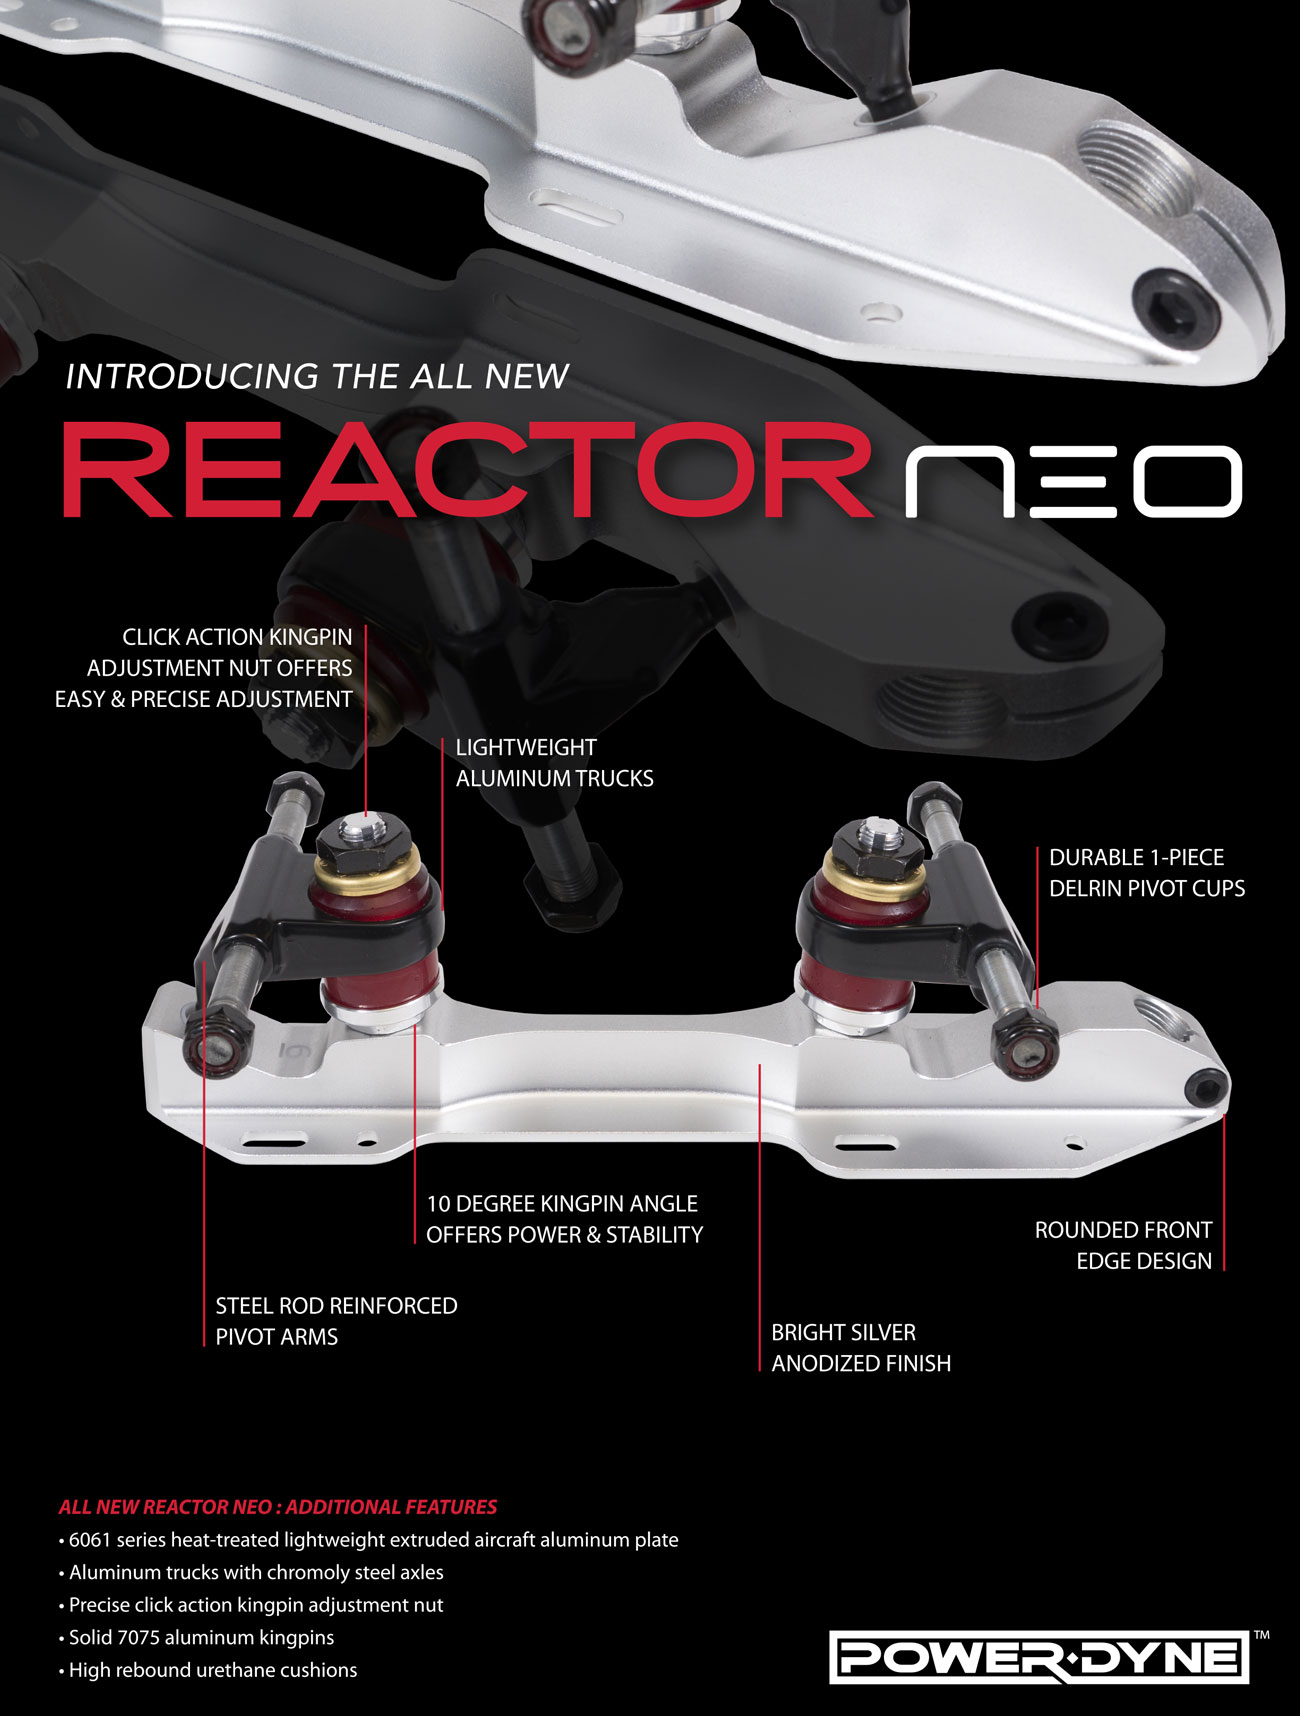 powerdyne-reactor-neo-info-sheet.jpg